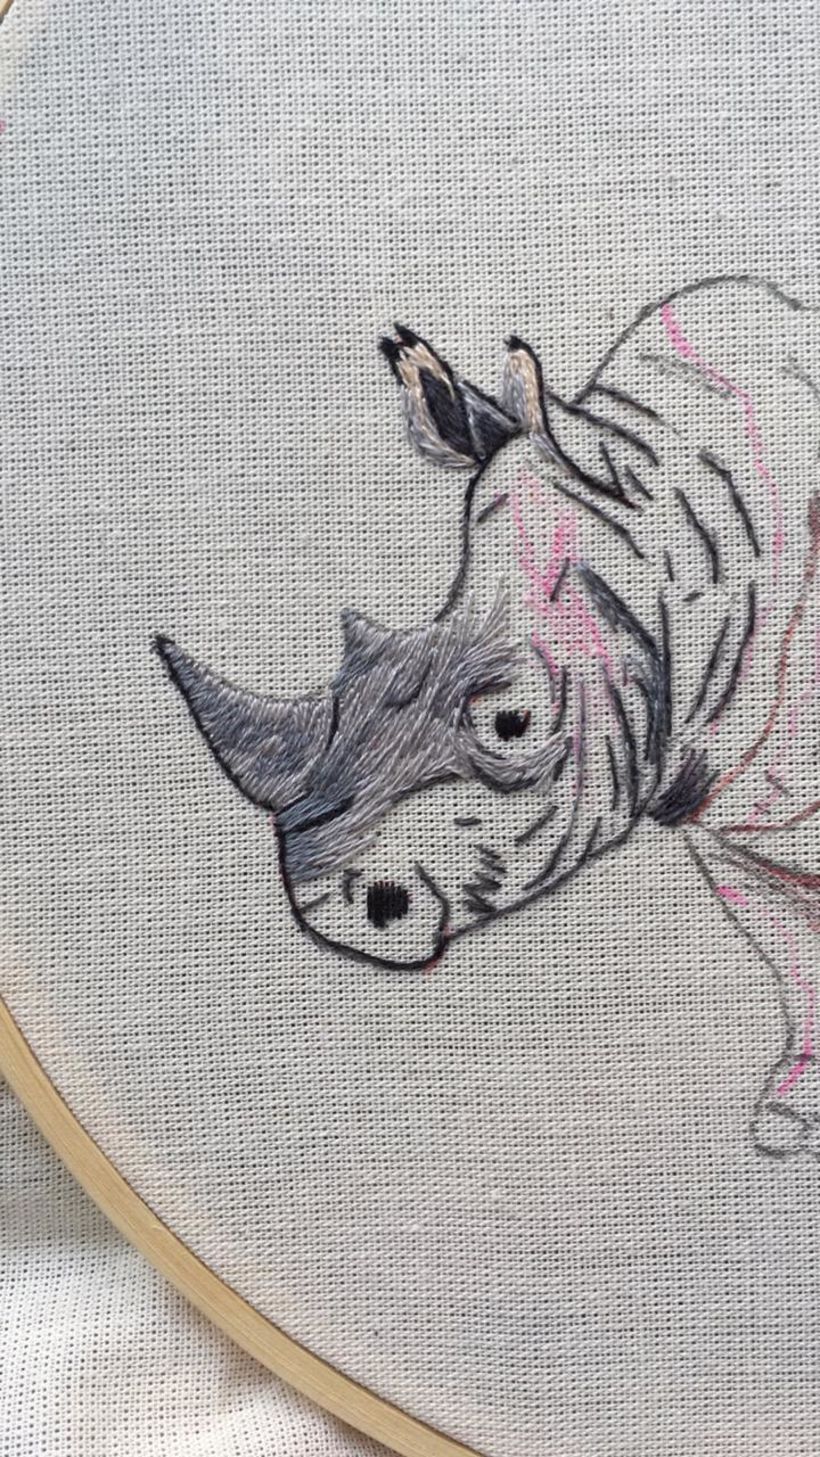 (1) Inicio do projeto - Chifres, rosto e orelhas do rinoceronte